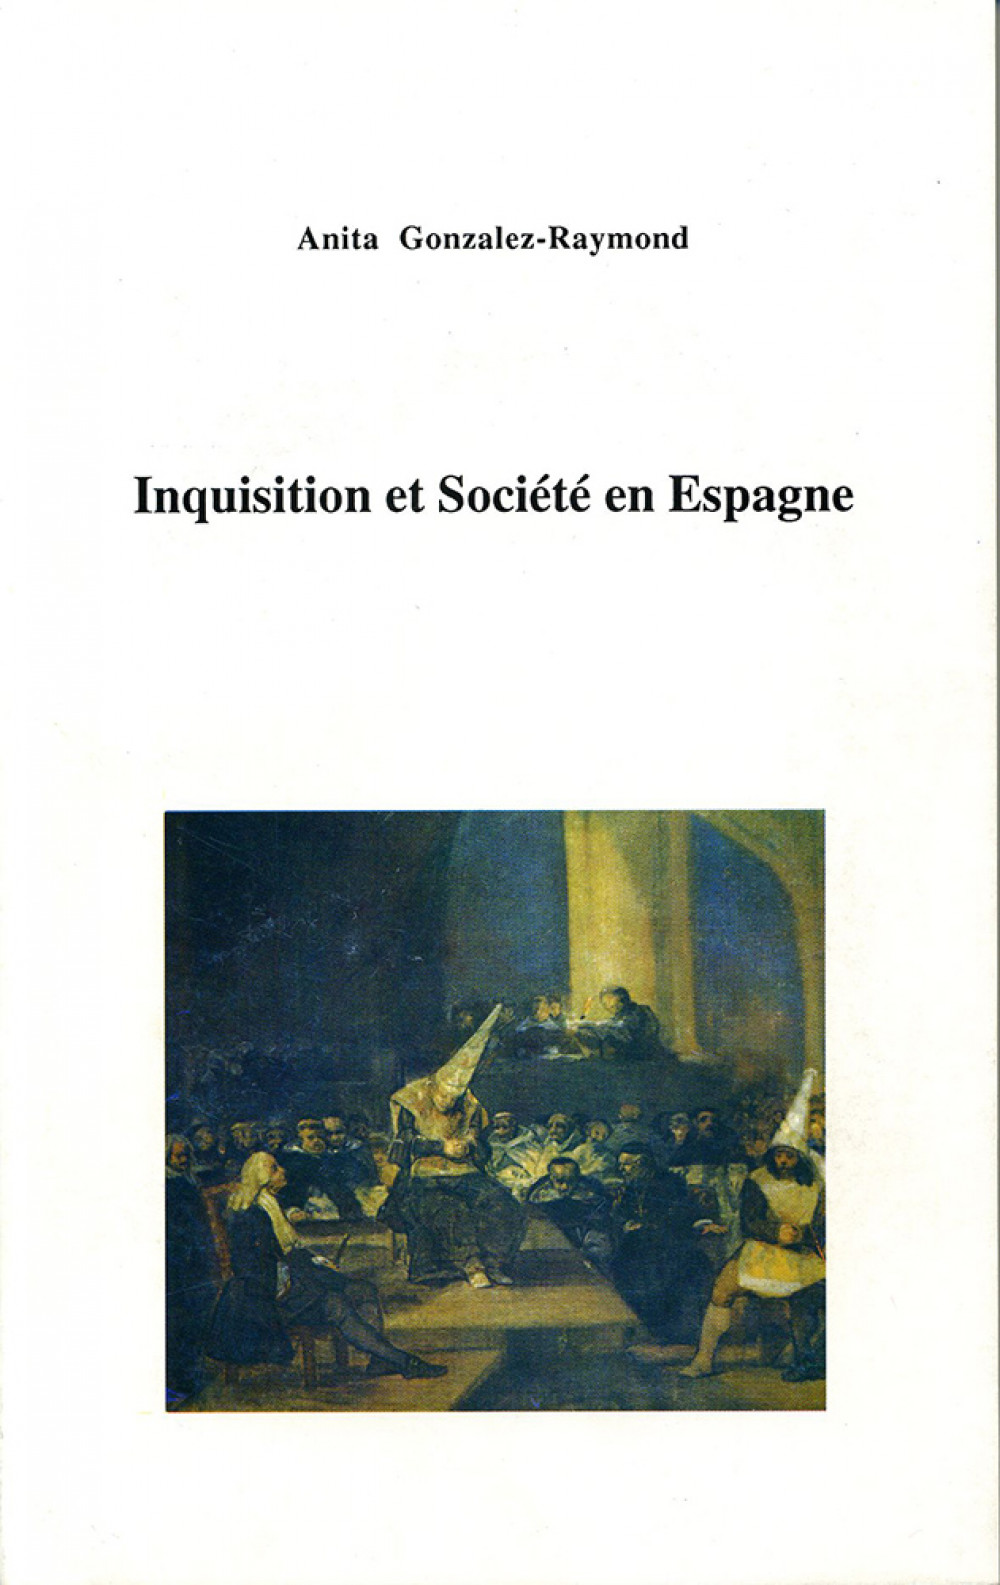 Inquisition et Société en Espagne